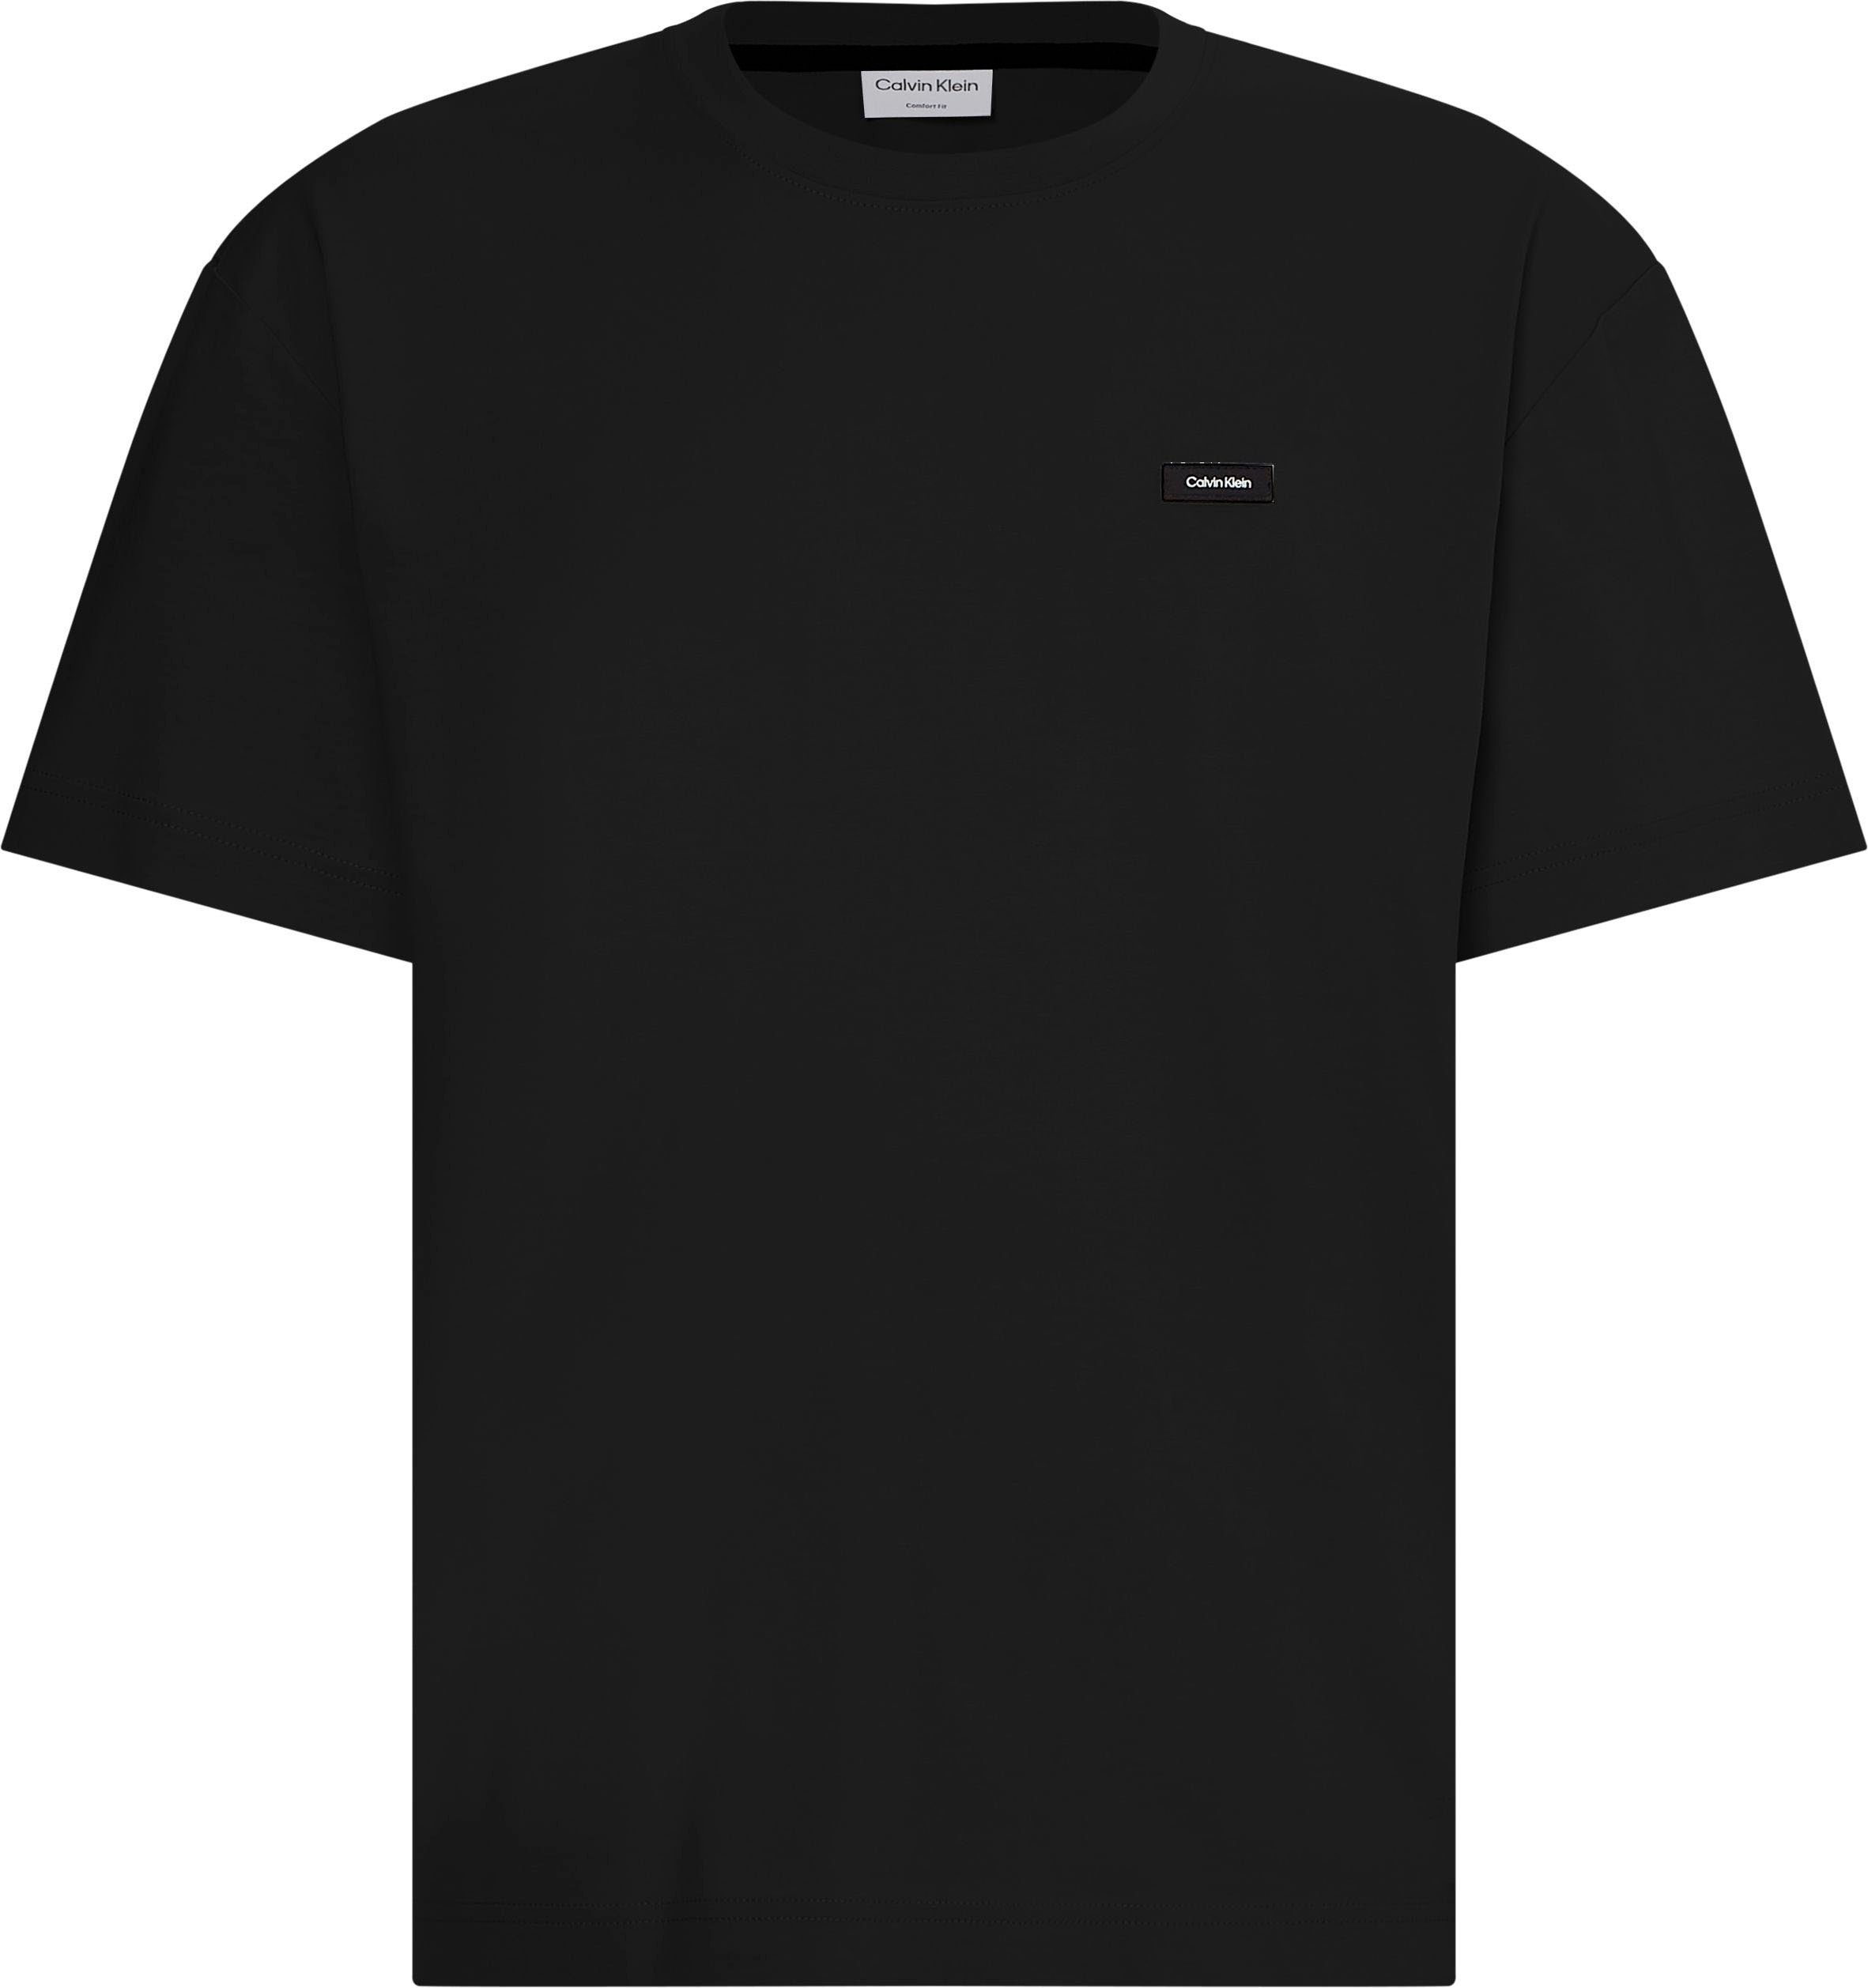 FIT Black Ck Calvin mit COMFORT BT-COTTON T-Shirt Big&Tall Rundhalsausschnitt Klein T-SHIRT